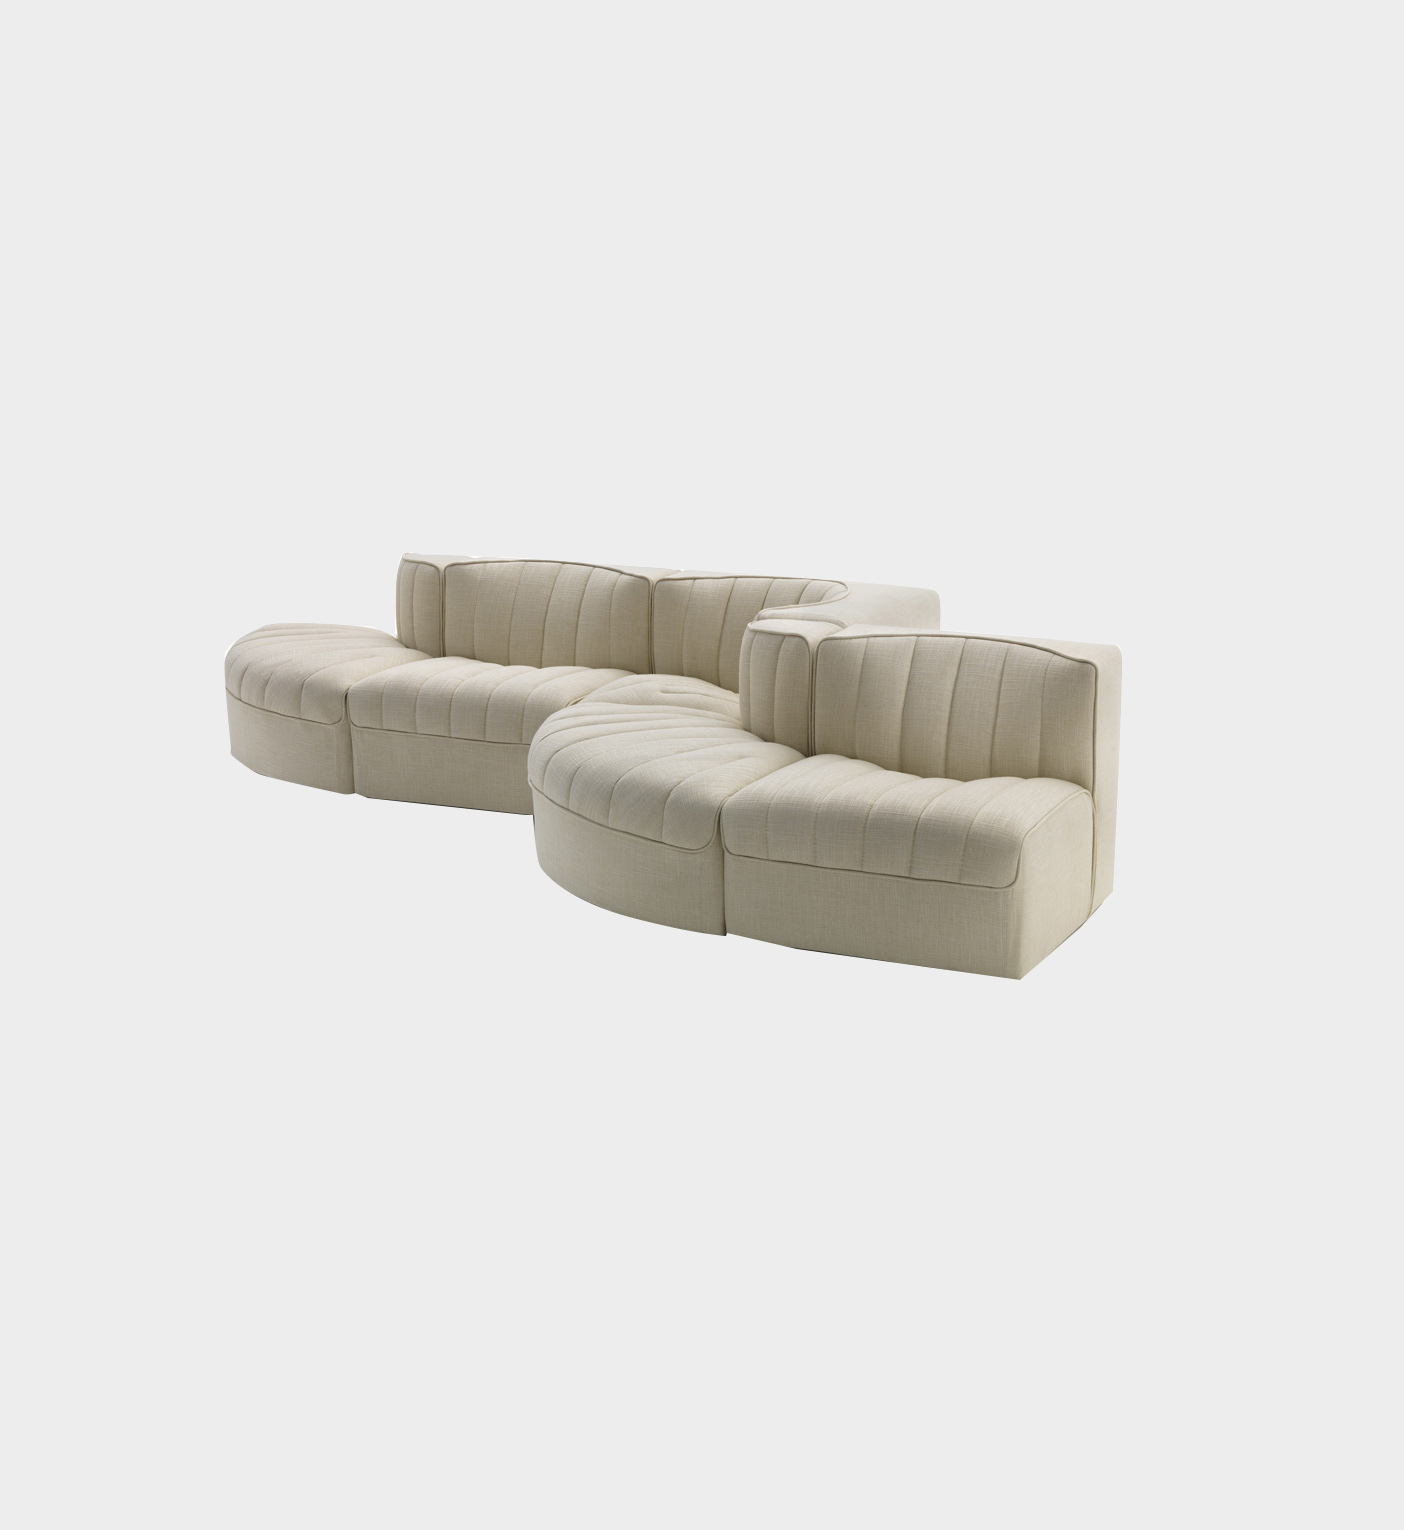 TinnappleMetz-Arflex - 9000 Rounded Sofa 10